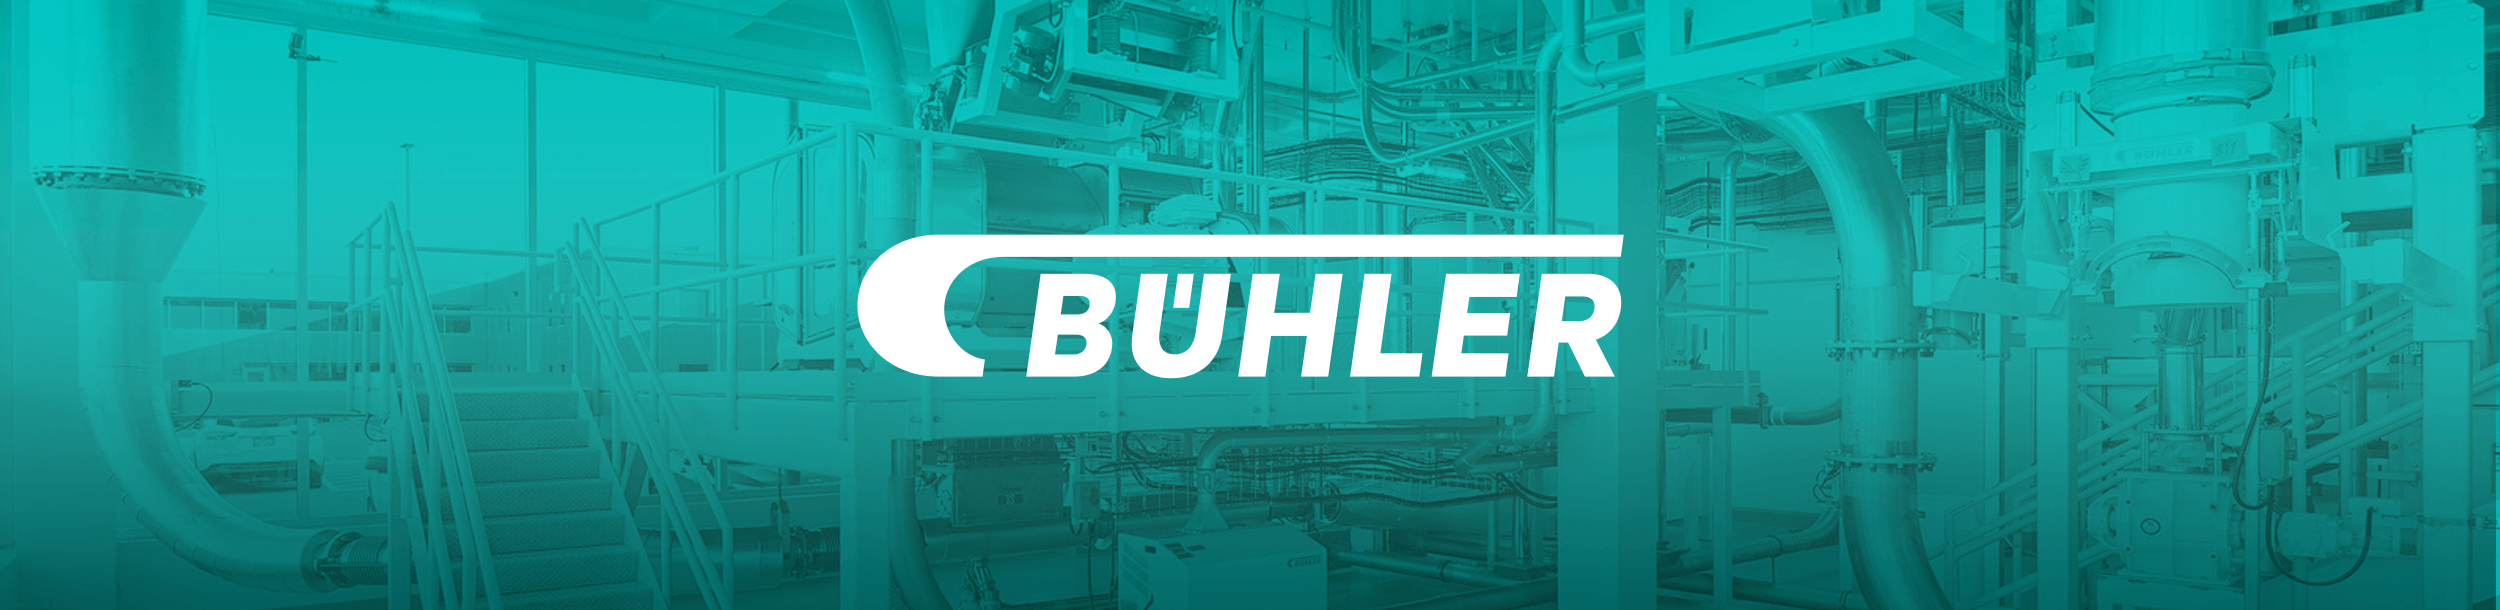 Buhler-Header-Background